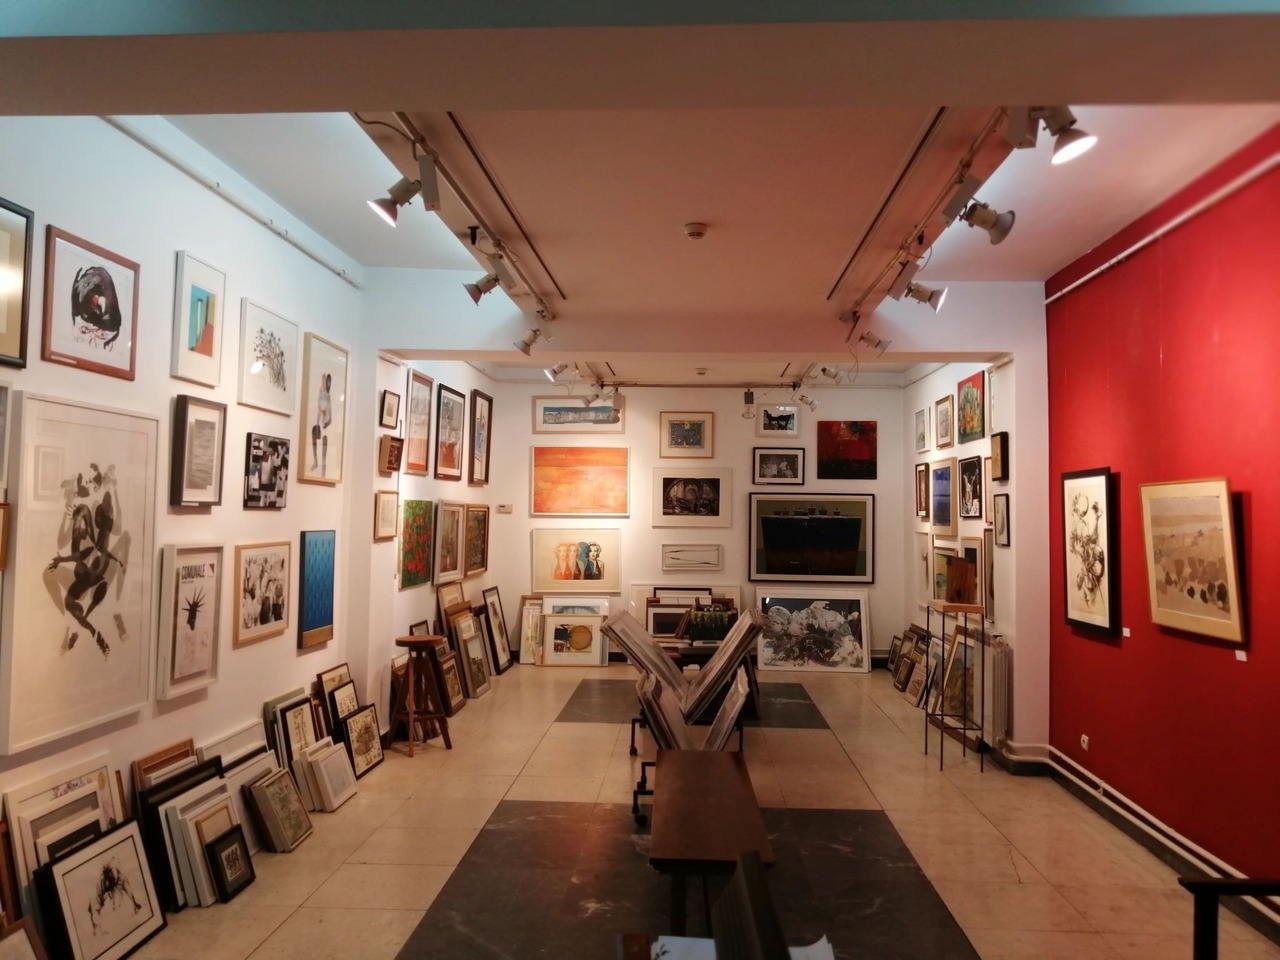 Sales Art Gallery Beograd - Indoor - Belgrade Card